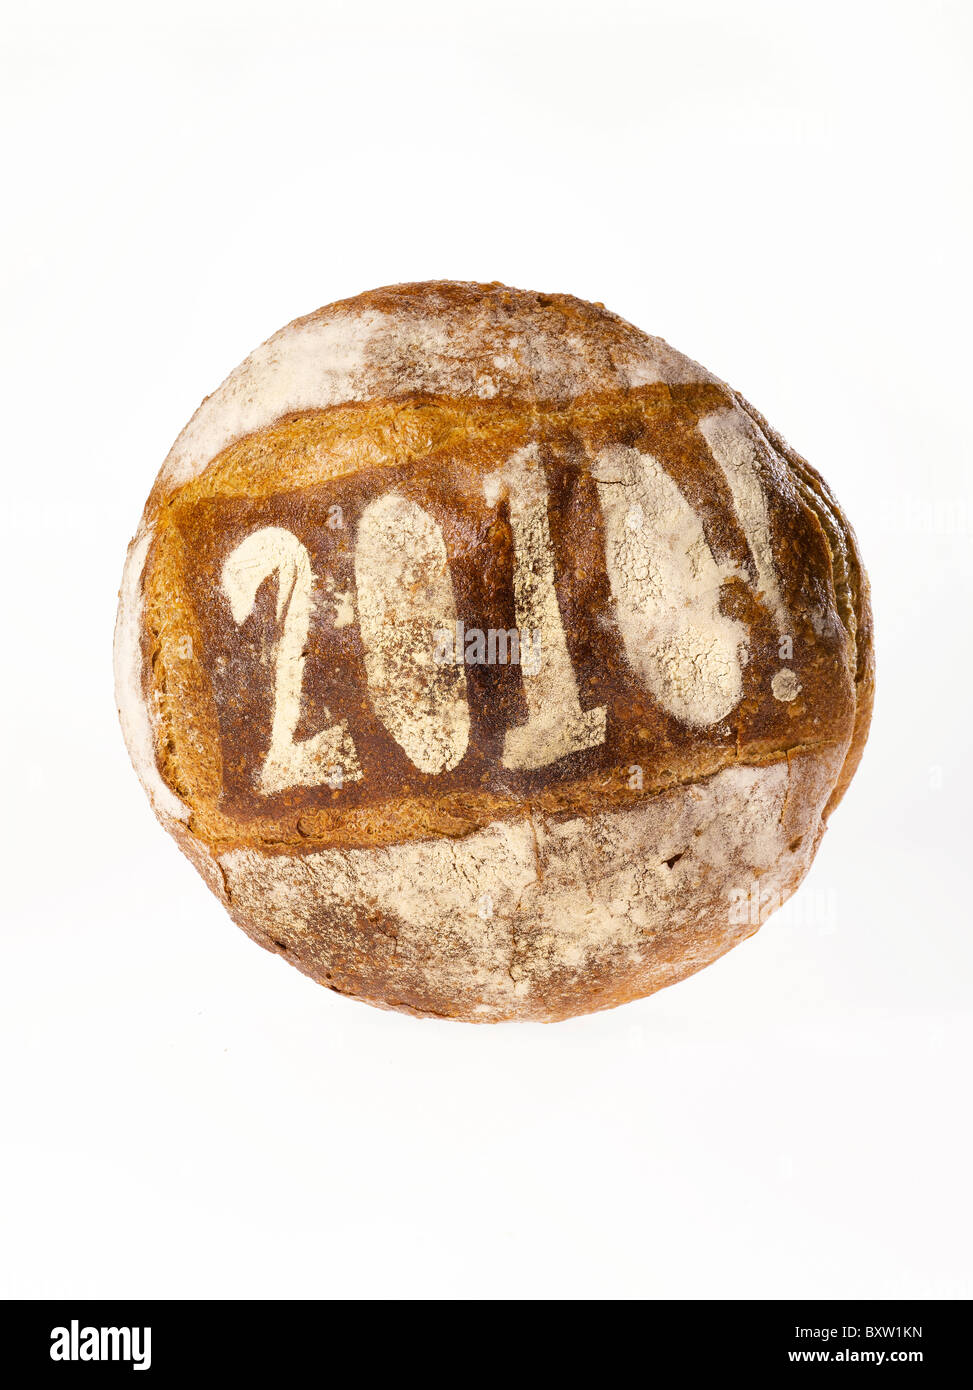 Miche de pain rond marqué au pochoir avec l'année 2010 Banque D'Images